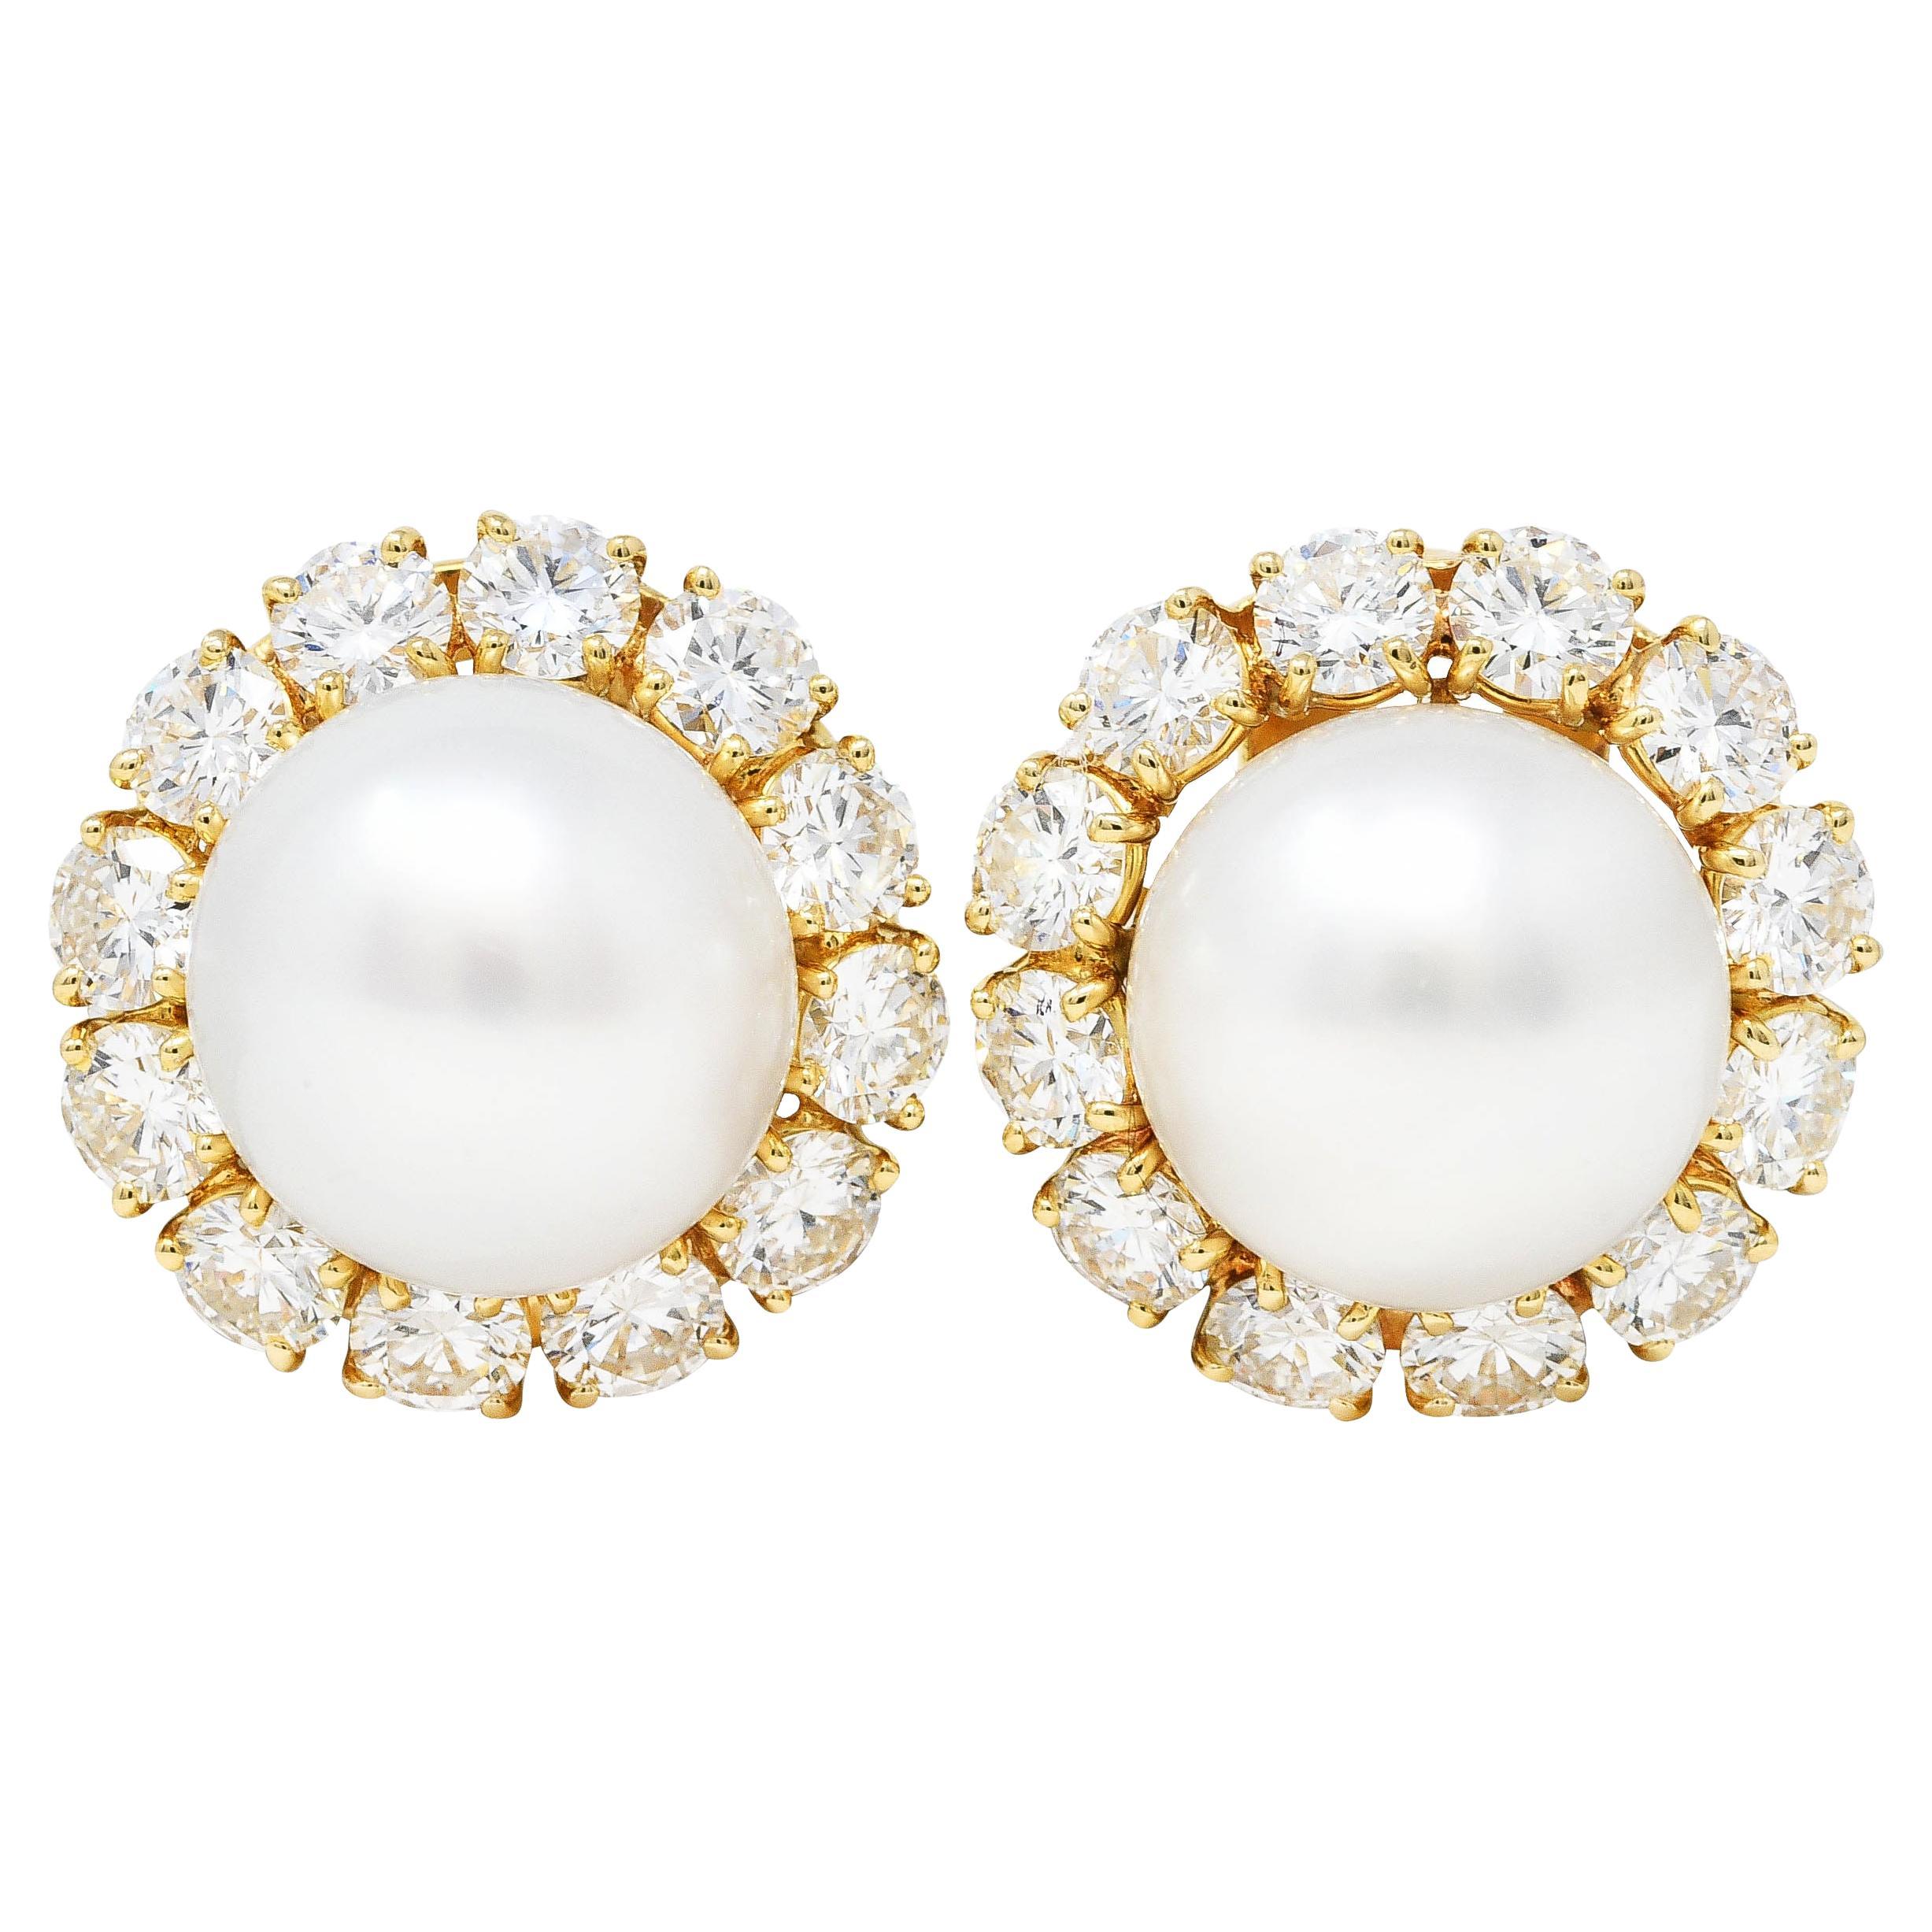 Van Cleef & Arpels South Sea Pearl 5.00 Carat Diamond 18 Karat Earrings